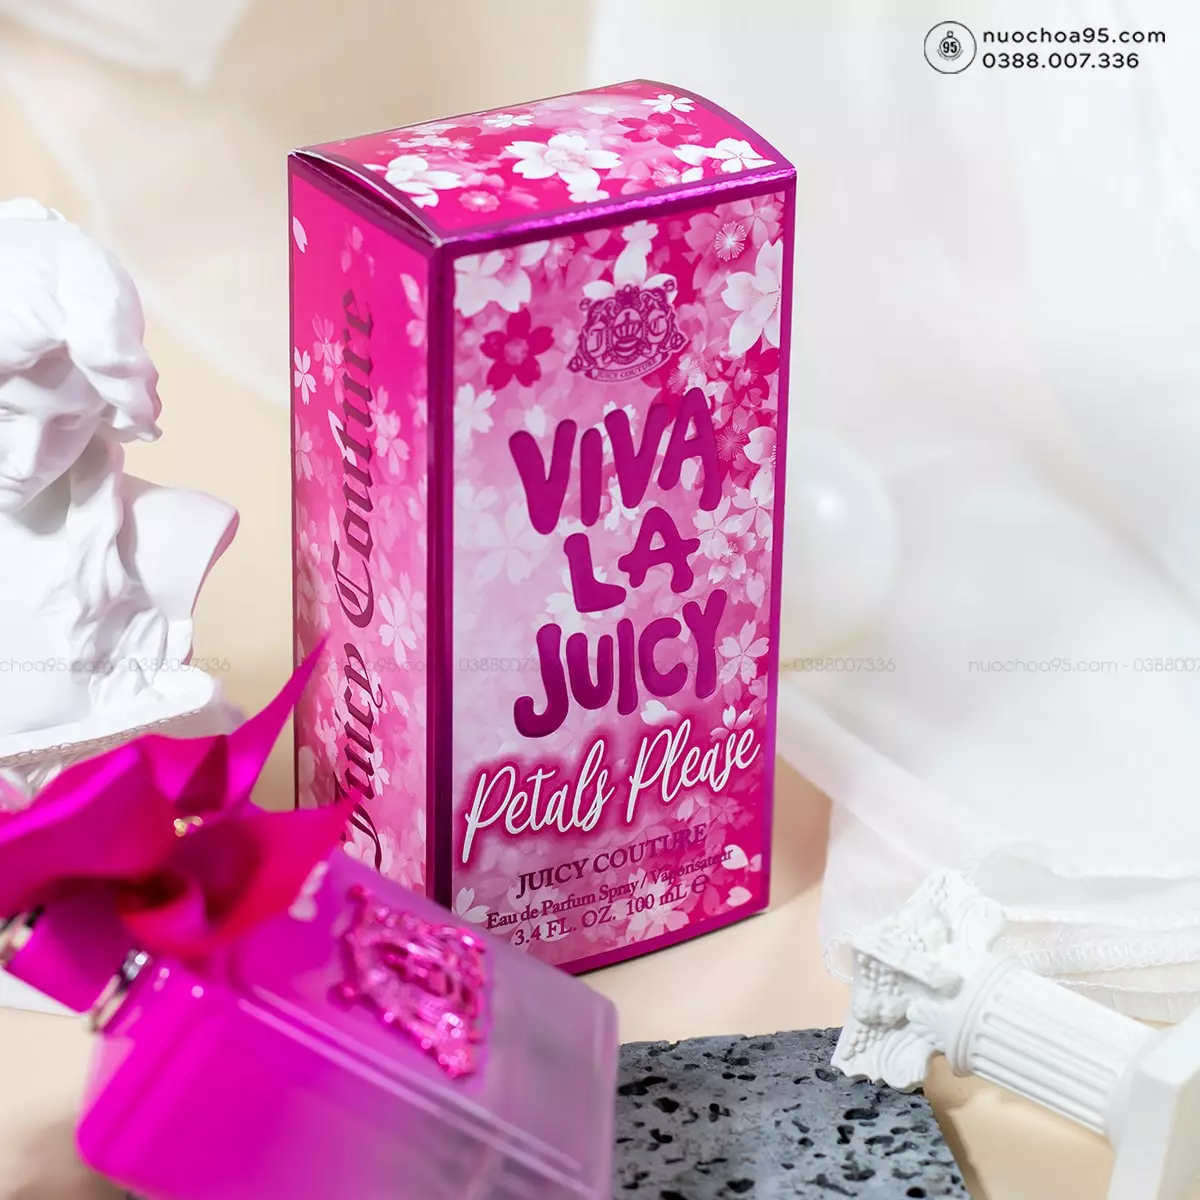 Nước hoa Juicy Couture Viva La Juicy Petals Please - Ảnh 3